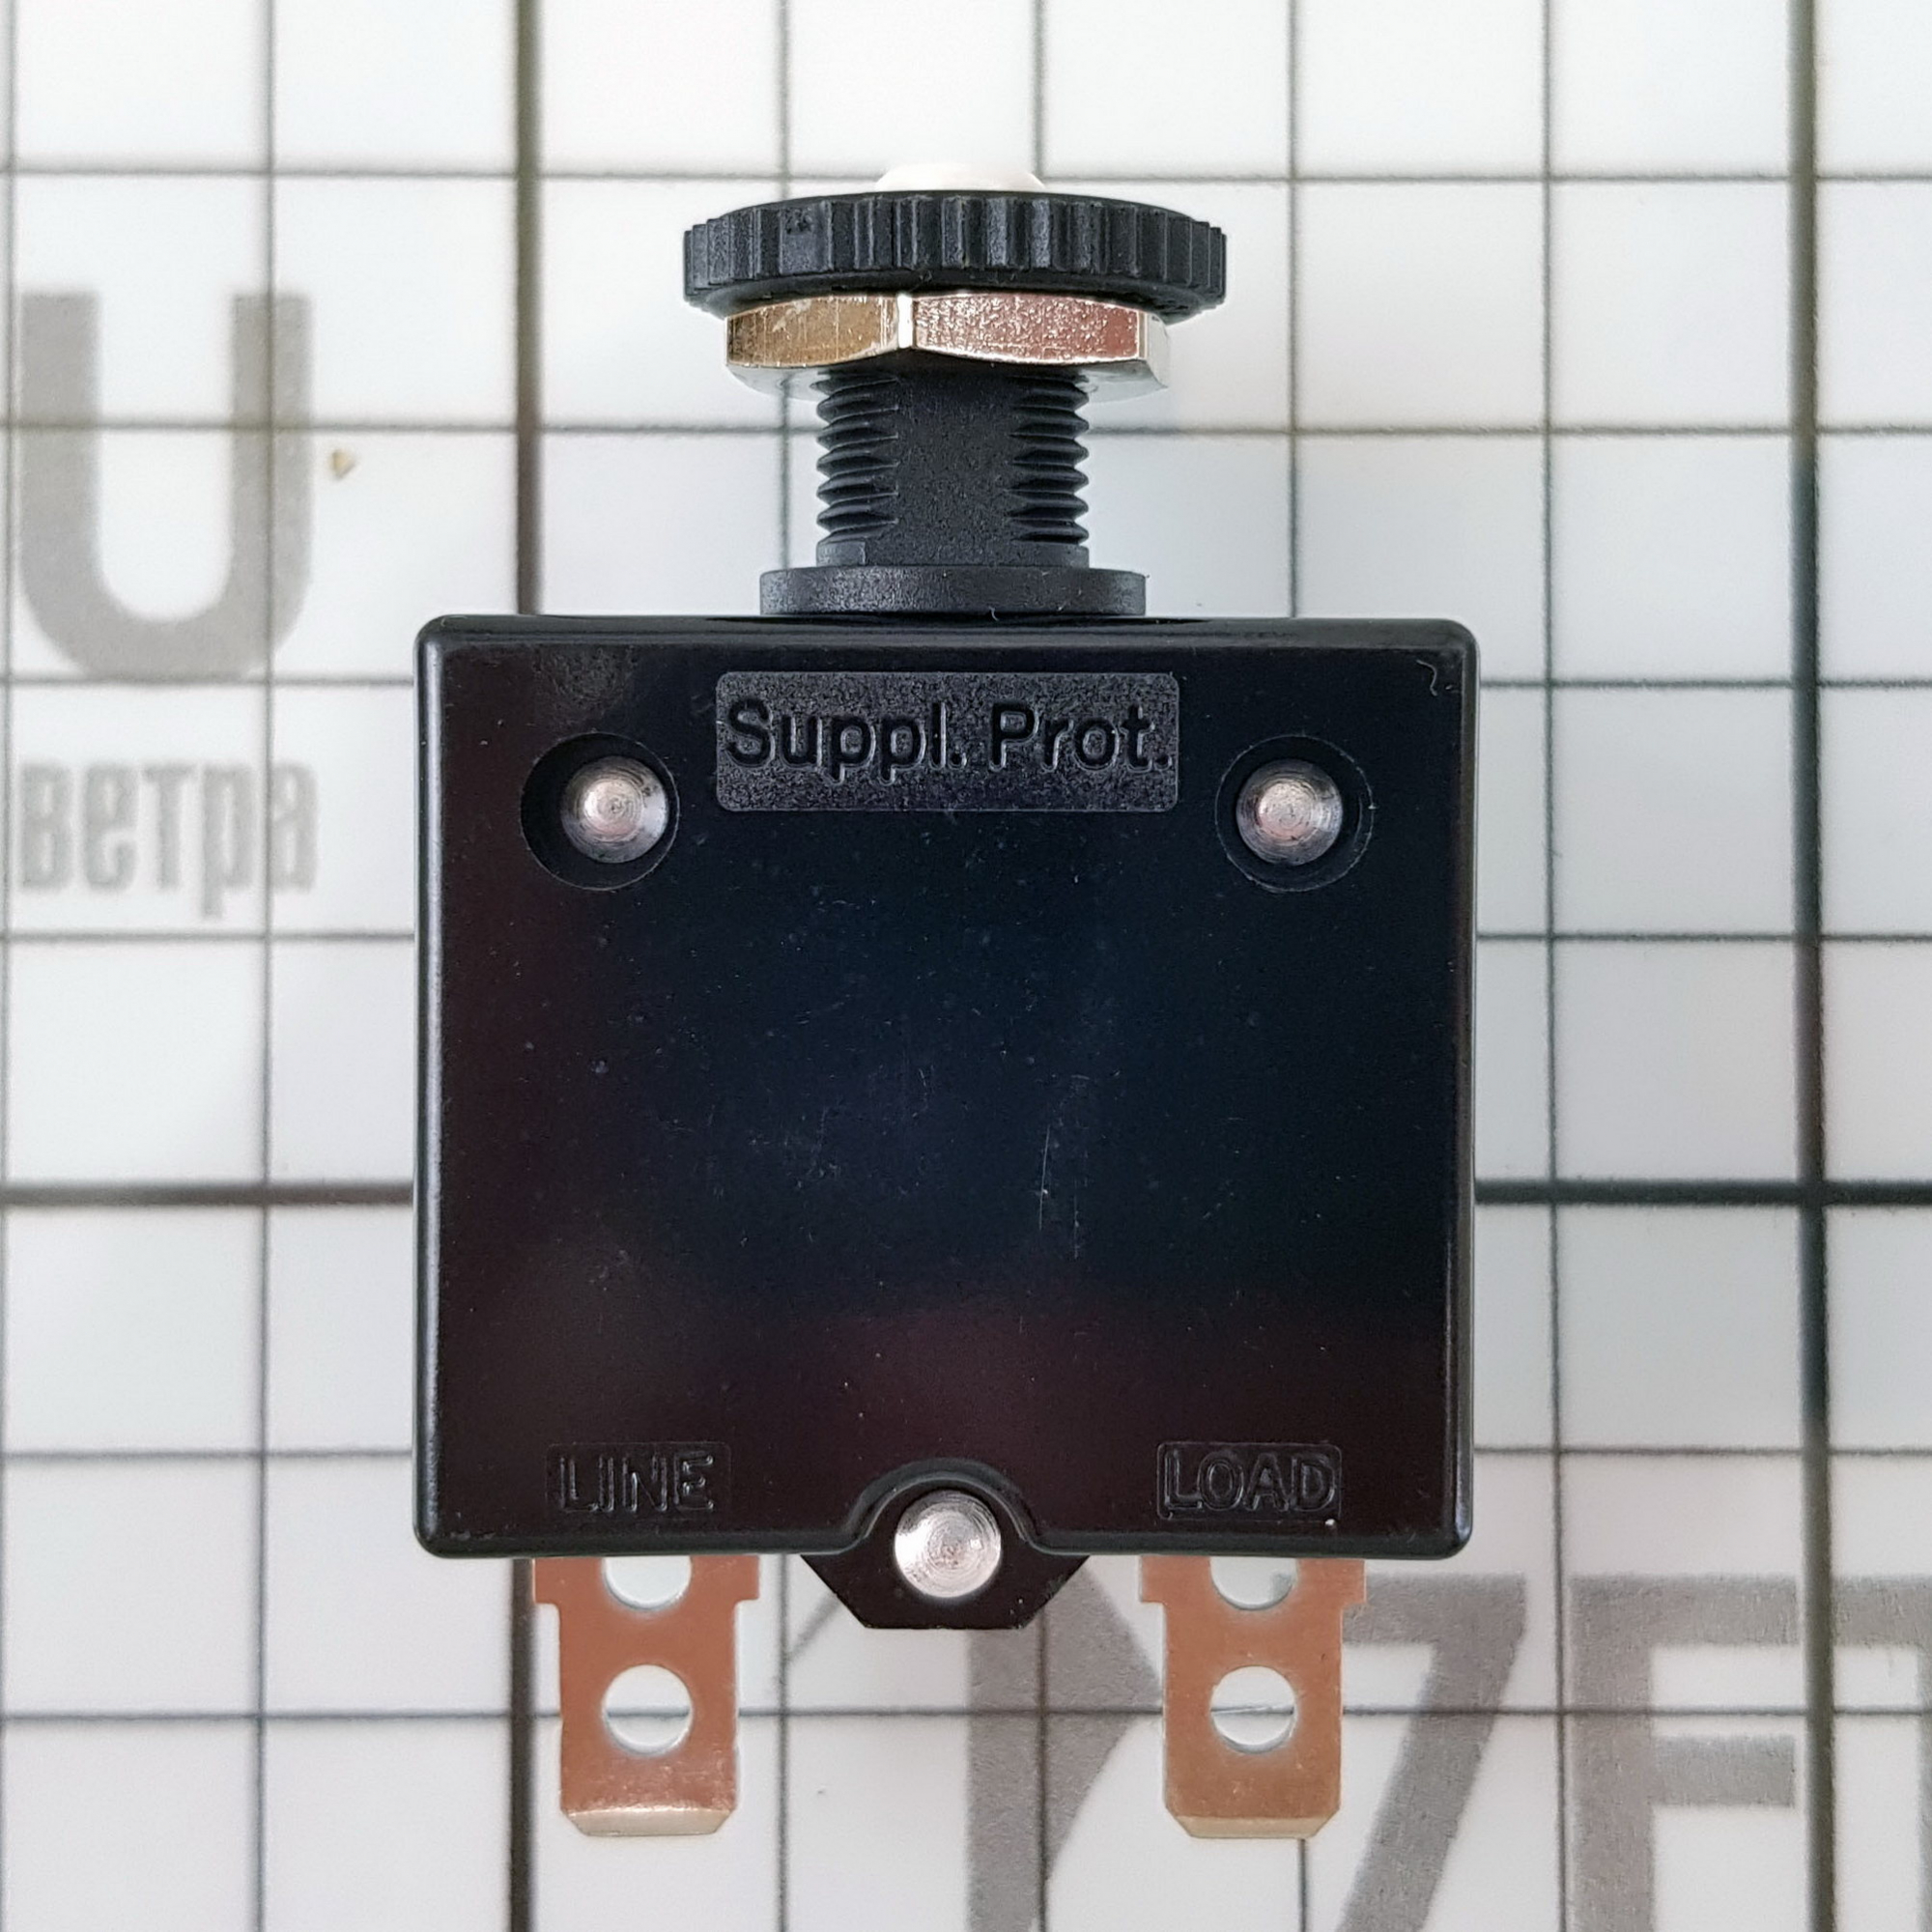 Купить Автоматический выключатель кнопочный неотключаемый Blue Sea CLB 7053 32В 7А быстрого монтажа 7ft.ru в интернет магазине Семь Футов